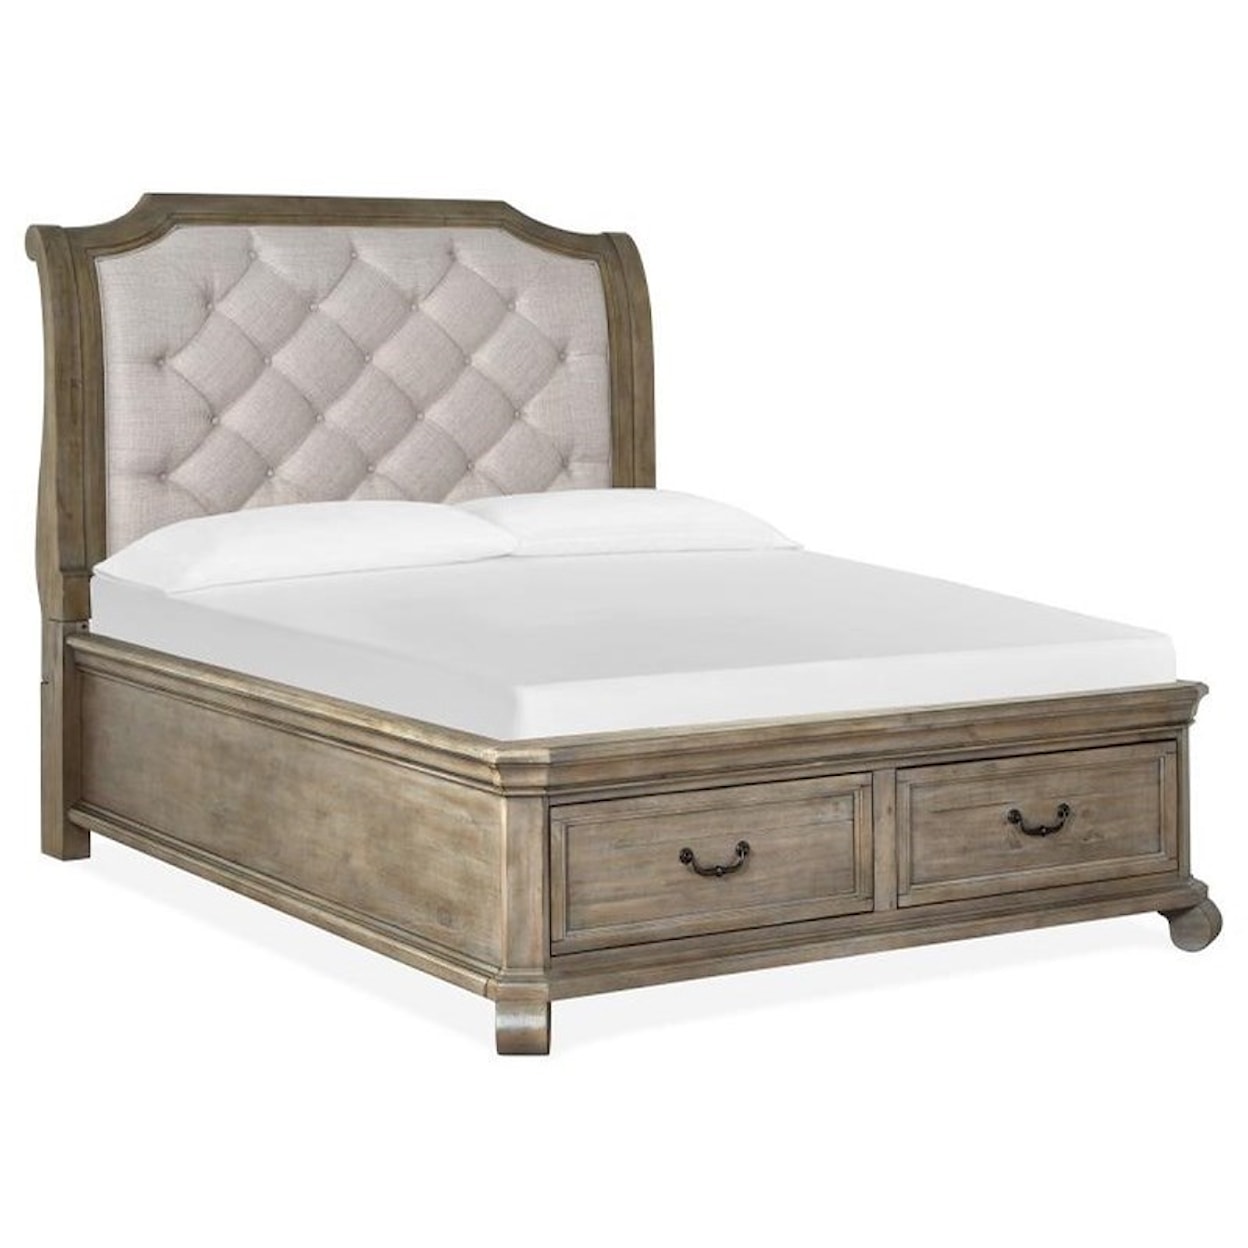 Magnussen Home Tinley Park Bedroom Queen Sleigh Upholstered Bed